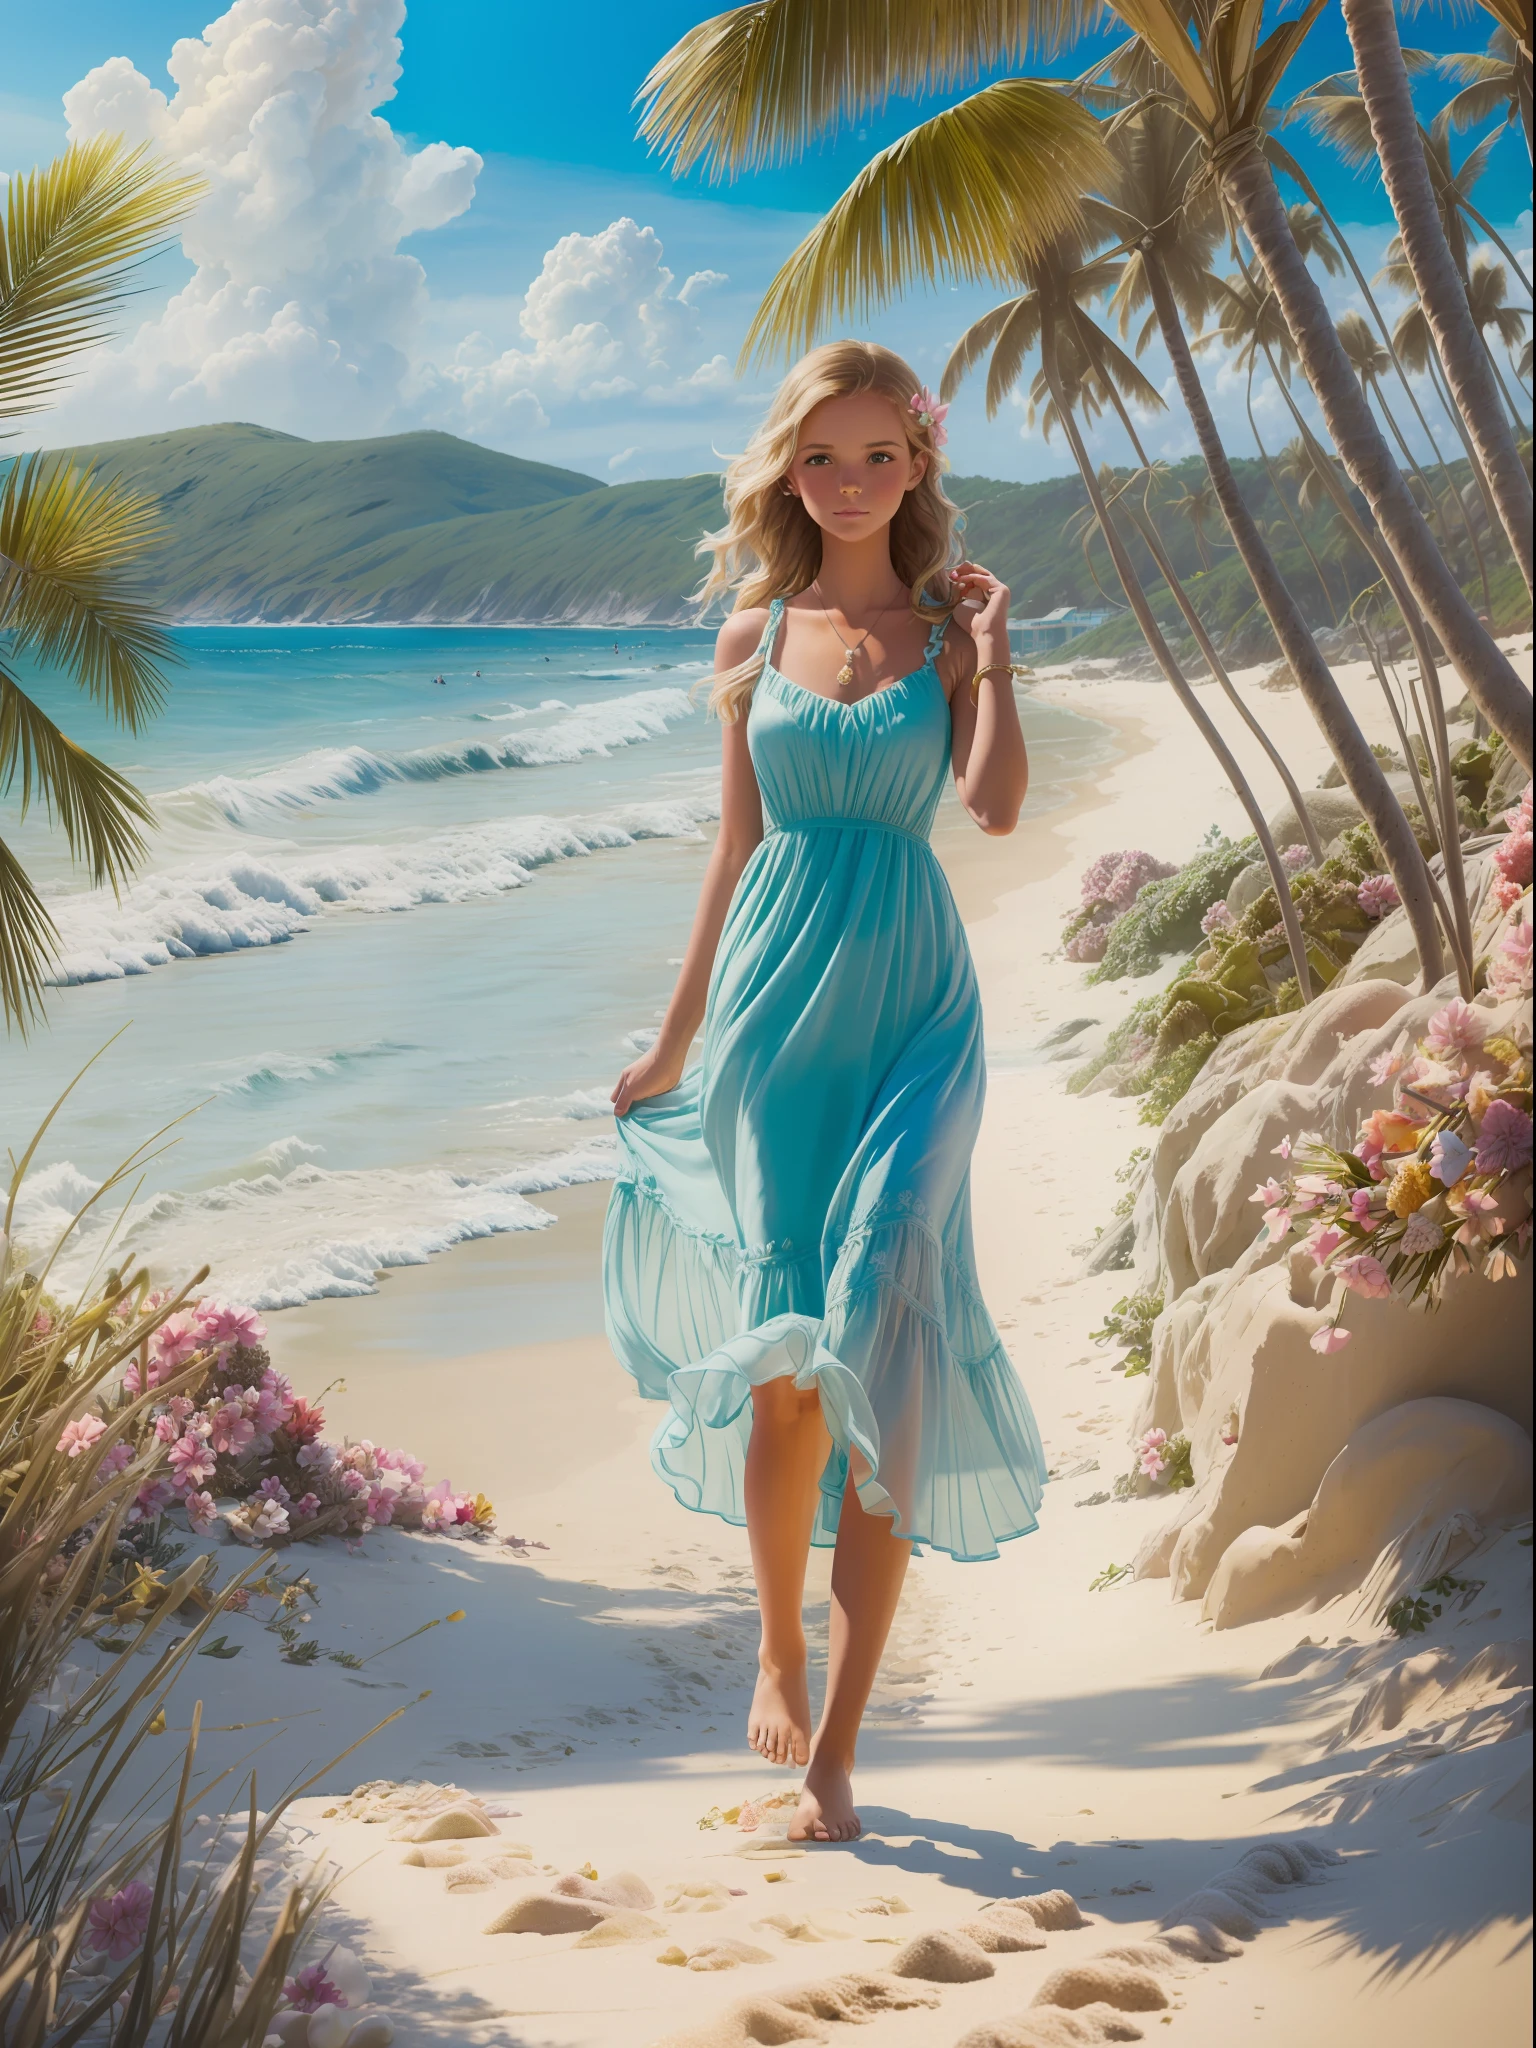 ((最好的品質)), ((傑作)), (詳細的), (健康), 穿著飄逸太陽裙的女孩, 赤腳走在沙灘上, (海灘極樂:1.2), (奧莉薇亞·博蒙特:1.1), (塔拉·麥克弗森:1.1), 寧靜的海岸風光, (柔和的色彩:1.2), (輕鬆的氣氛:1.1), (中景:1.1), 8k分辨率